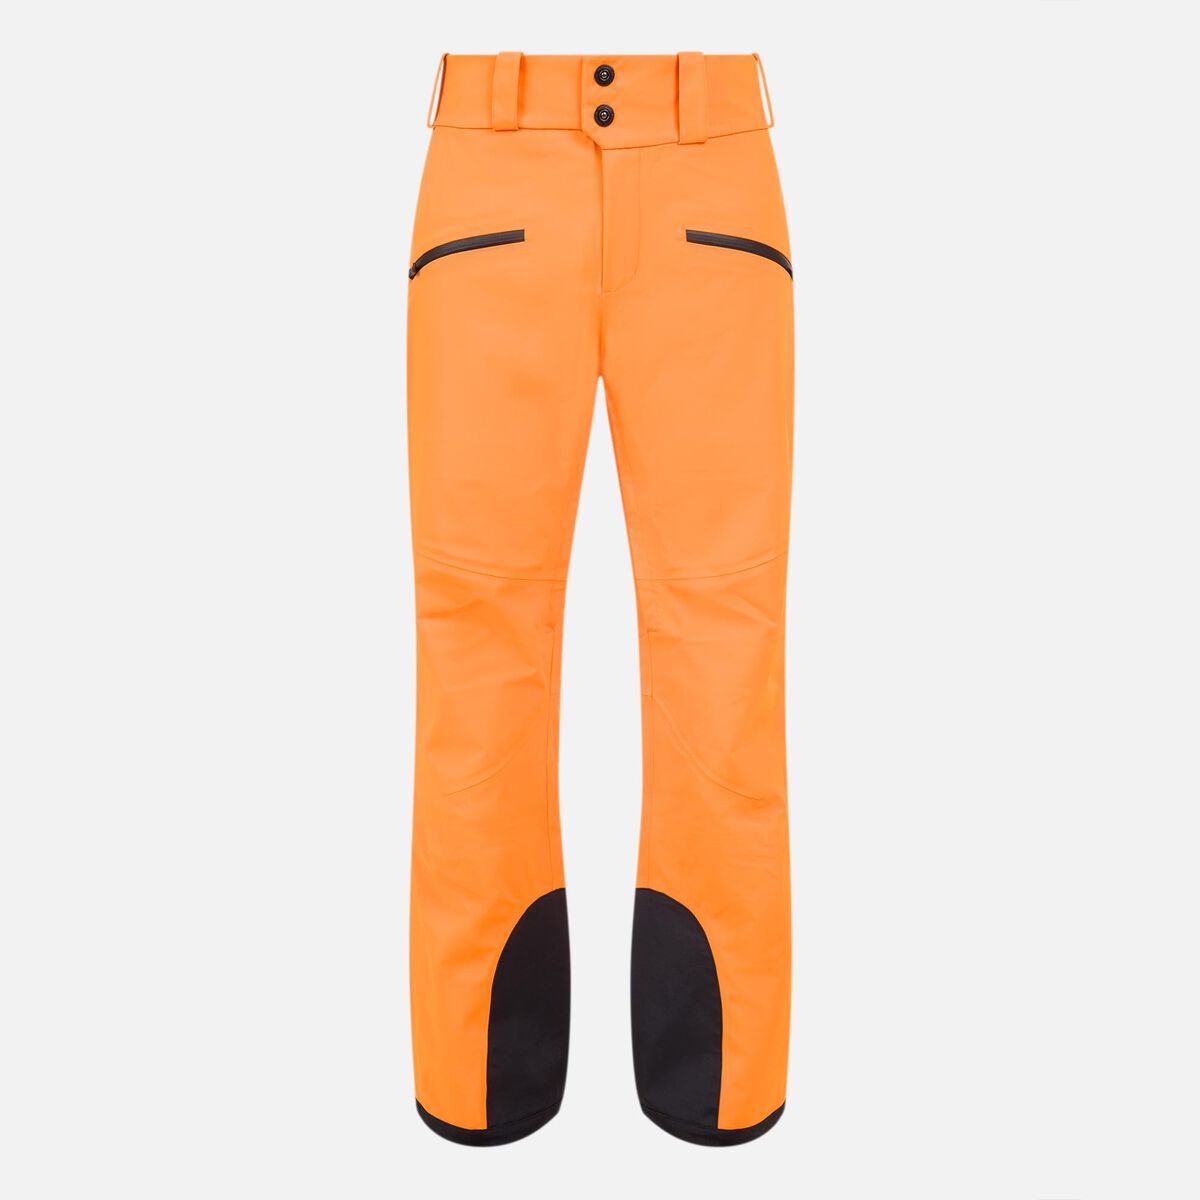 Pantalon de ski Evader homme